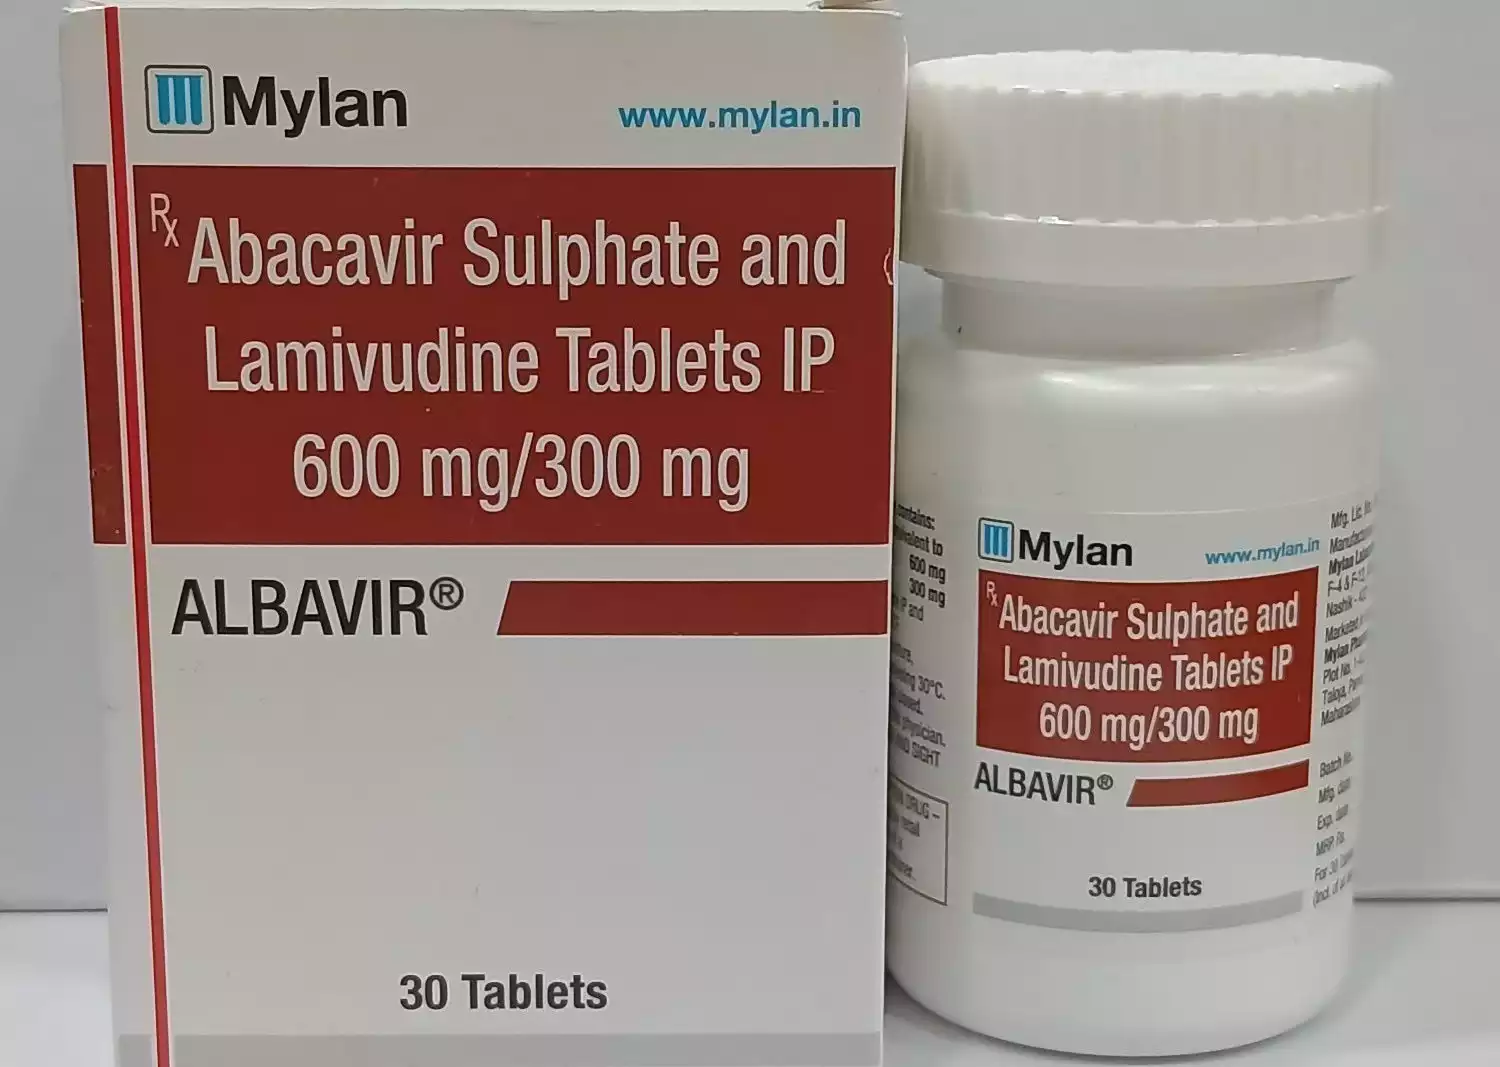 Τα abacavir και lamivudine είναι αναλογικά αντιρετροϊκά φάρμακα